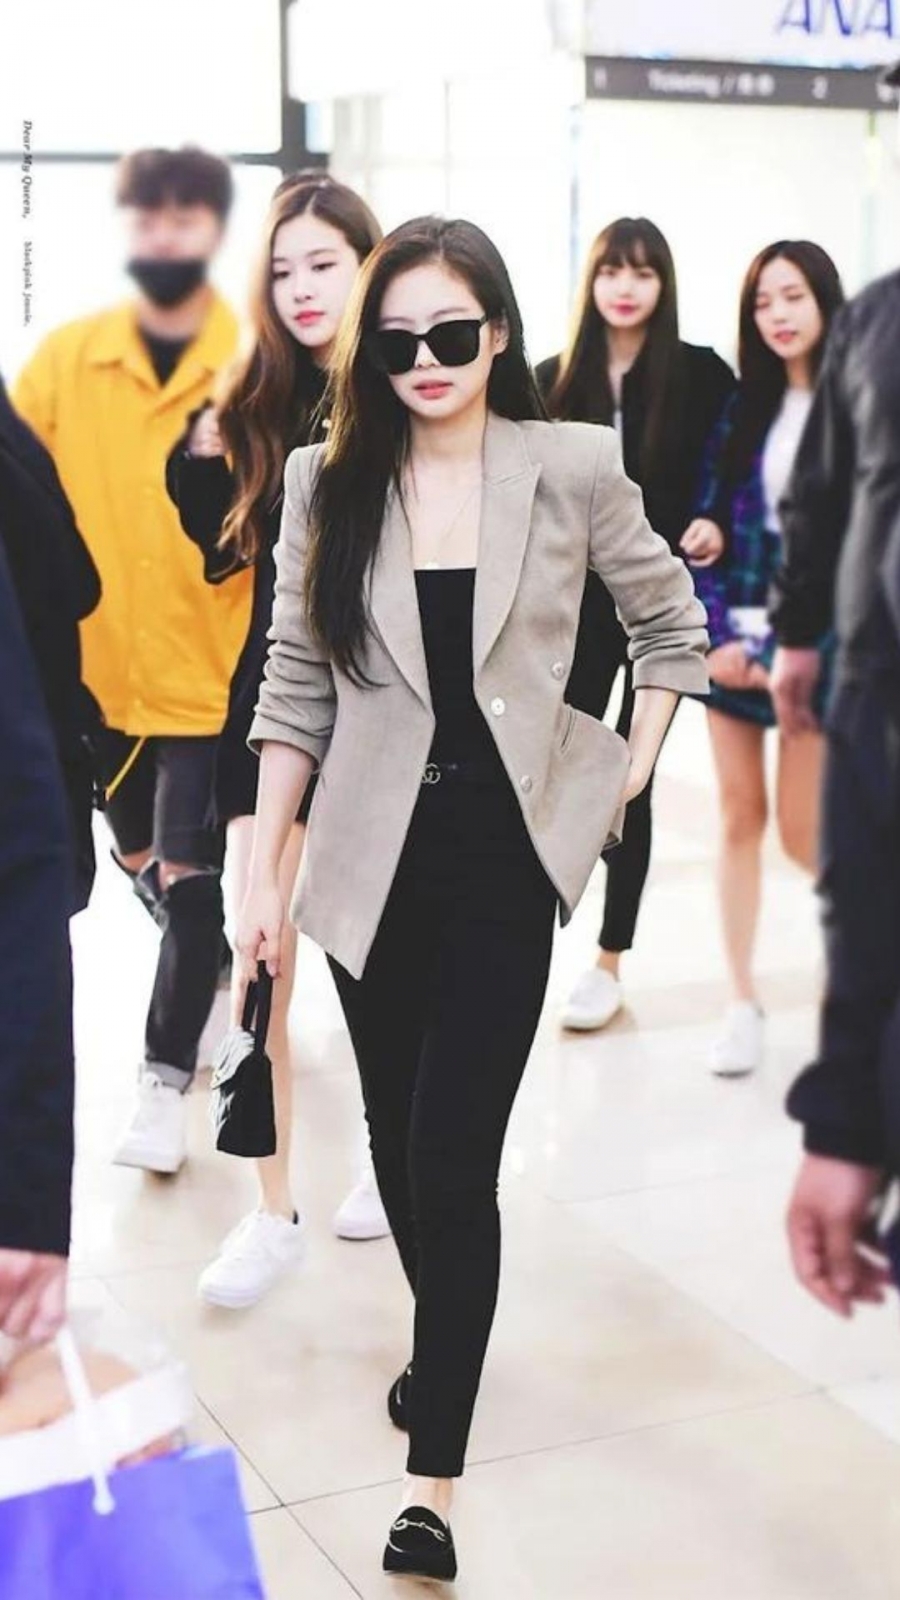 Năm 2018, Jennie được bổ nhiệm là đại sứ toàn cầu của Chanel. Đây cũng là lúc cô chú ý đến cách ăn mặc hơn, chỉn chu khi ra sân bay.